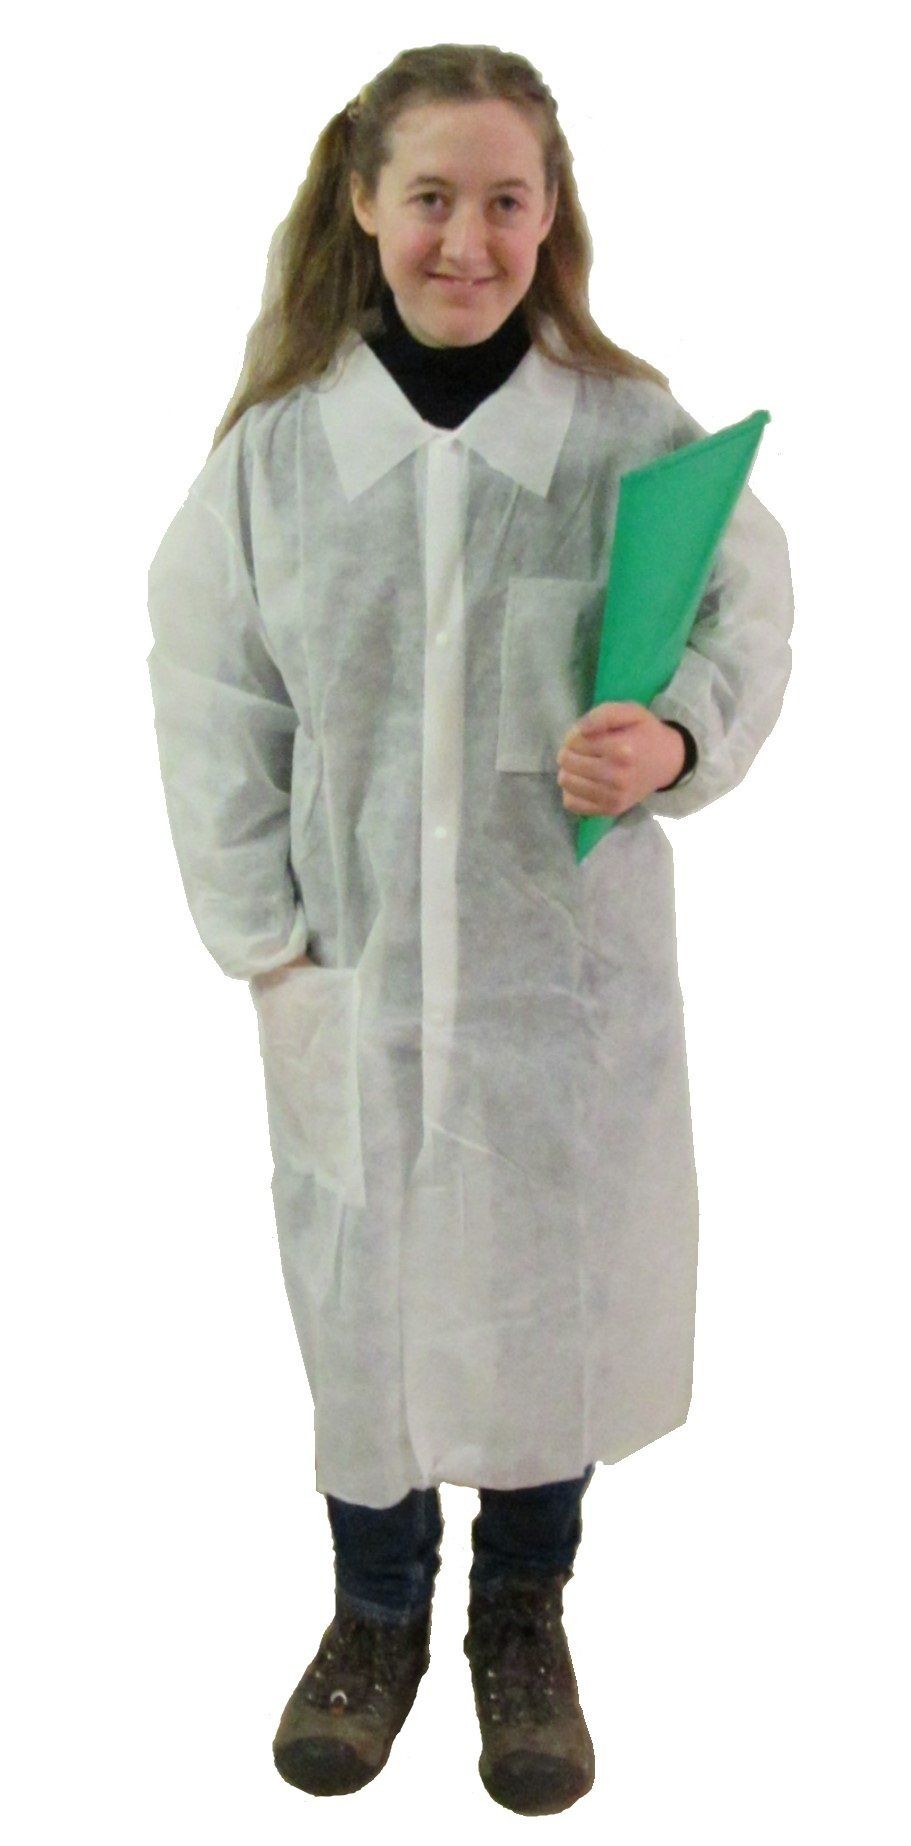 disposable children's lab coats, disposable kids lab coats, kids science lab coats